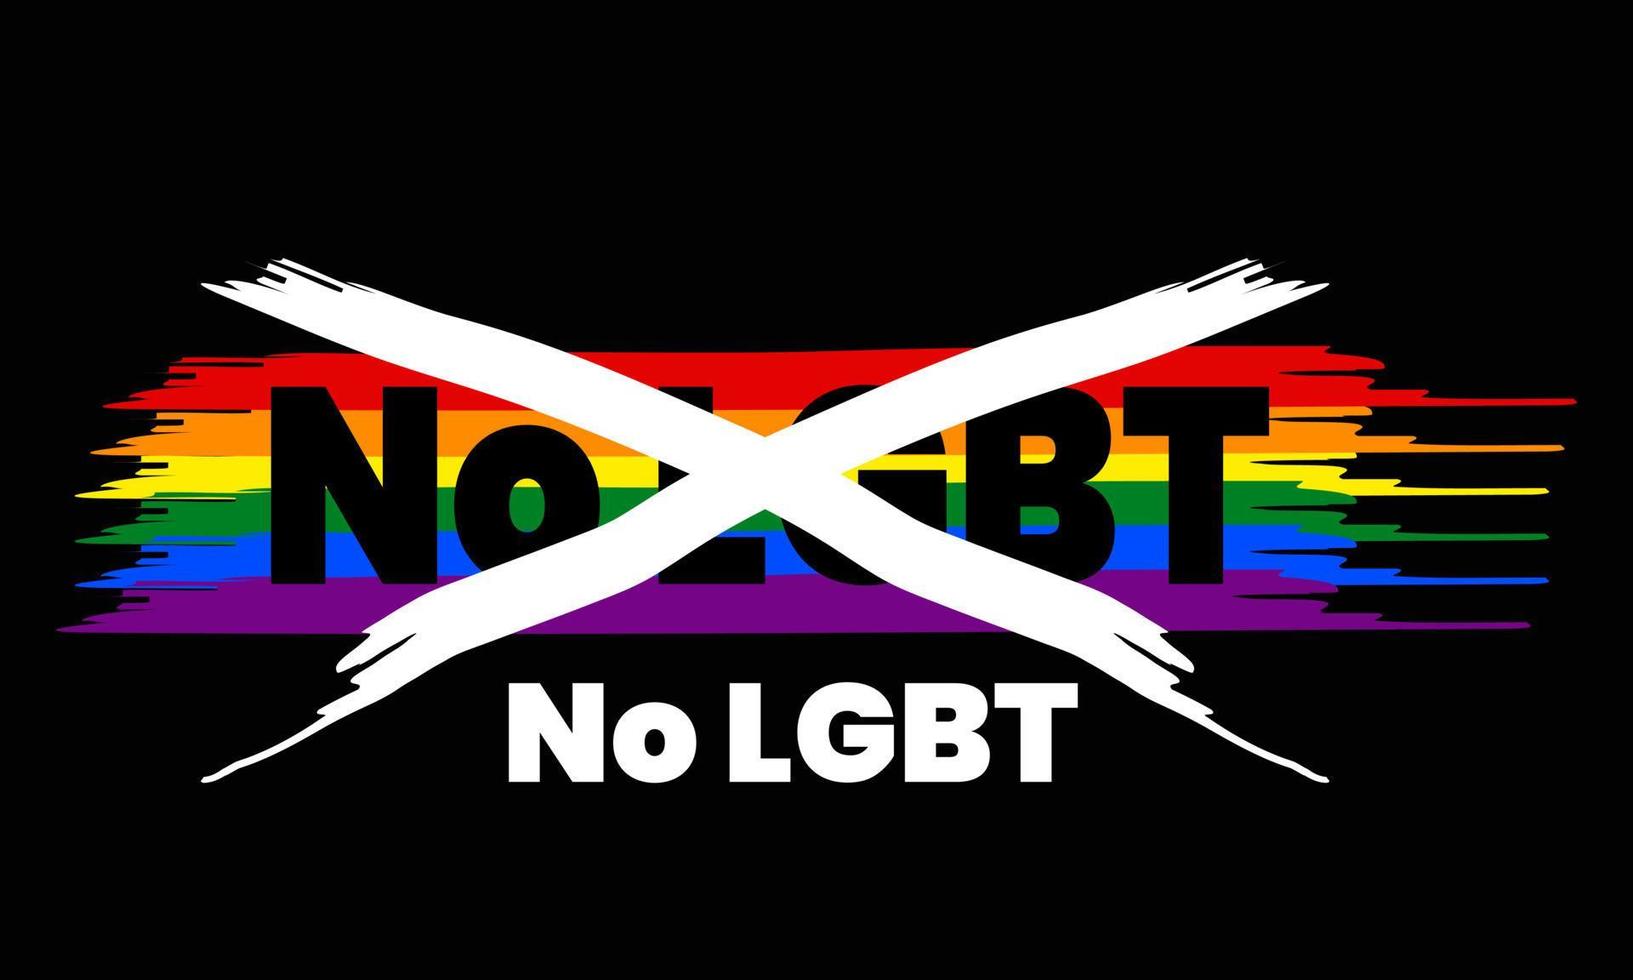 Bupati Wonogiri resah karena anak sekolah gabung grup LGBT